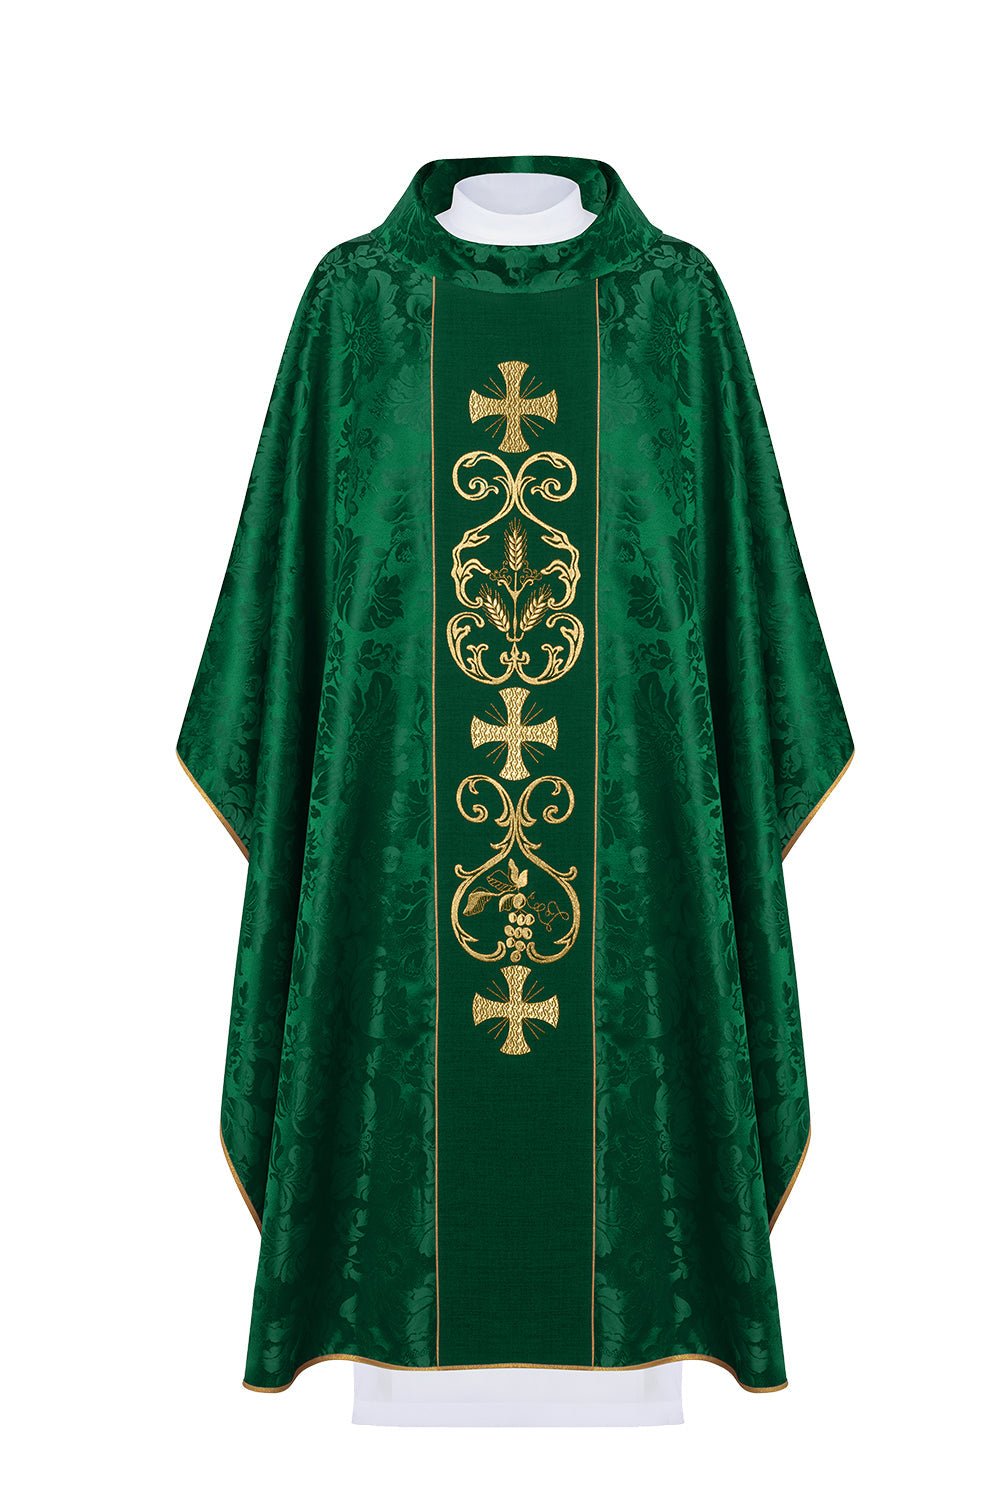 Zielony ornat liturgiczny zdobiony haftowanym pasem